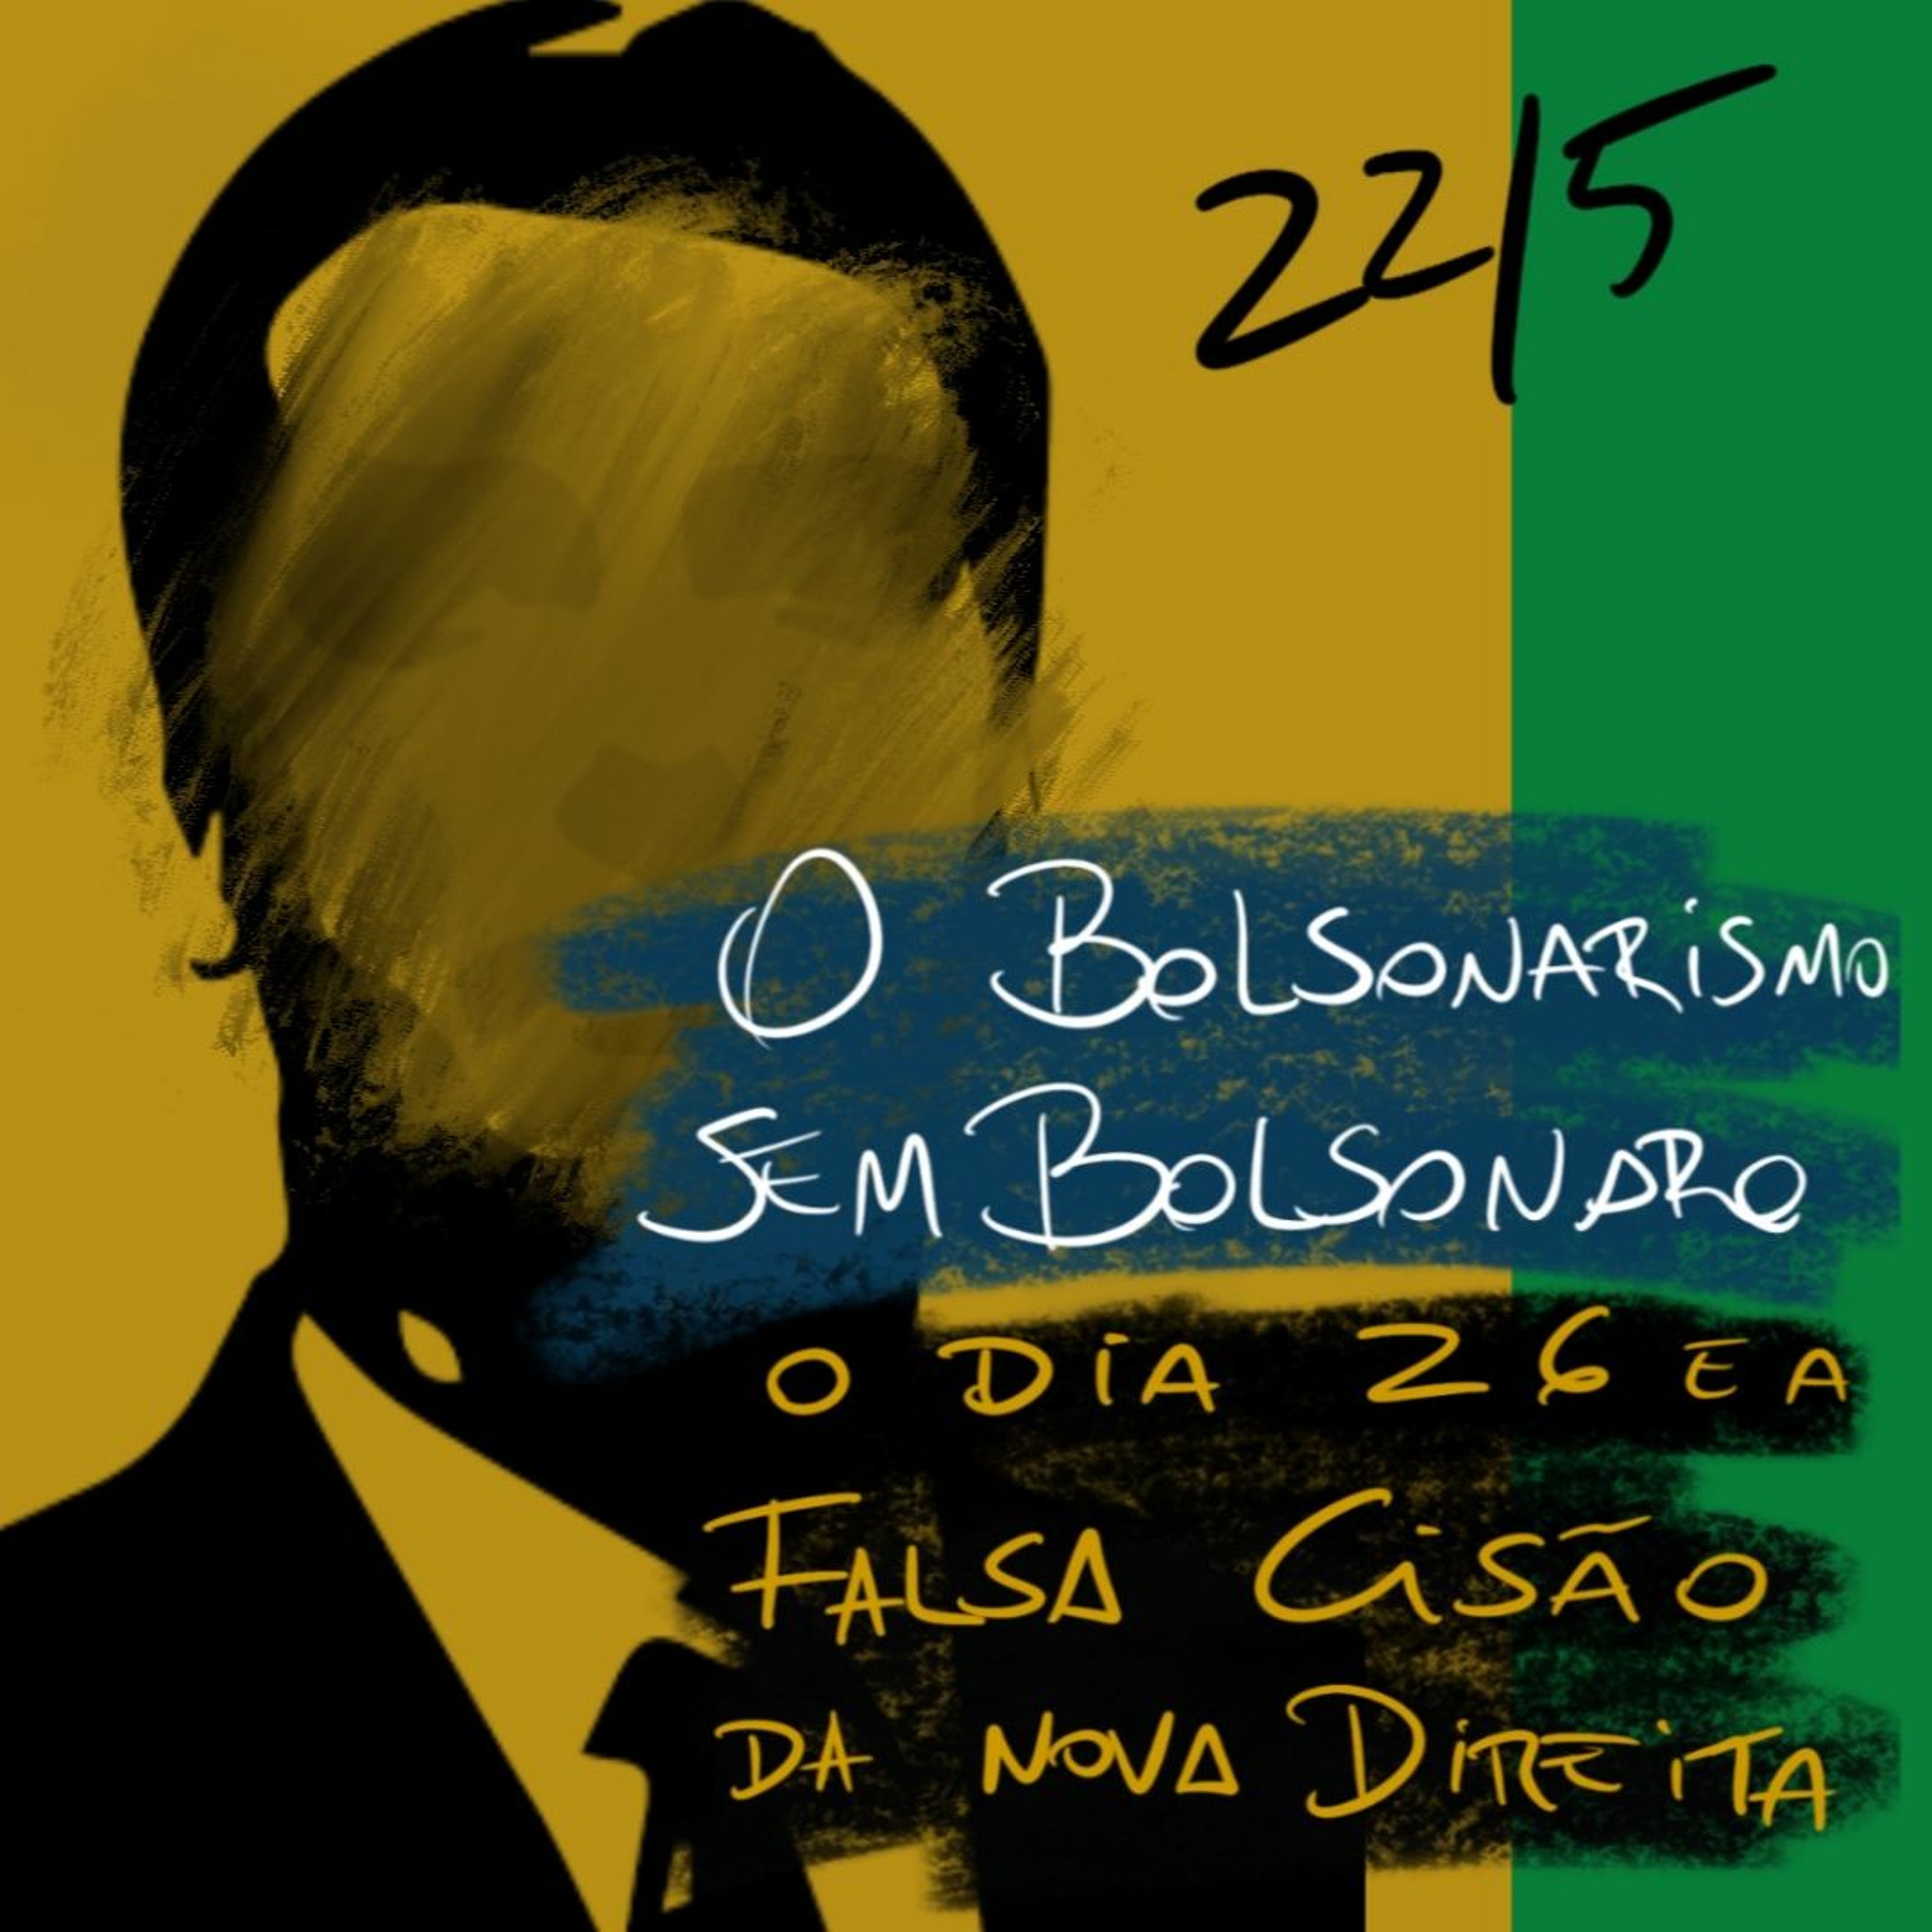 BFM - O Bolsonarismo sem Bolsonaro. O dia 26 e a falsa cisão da direita